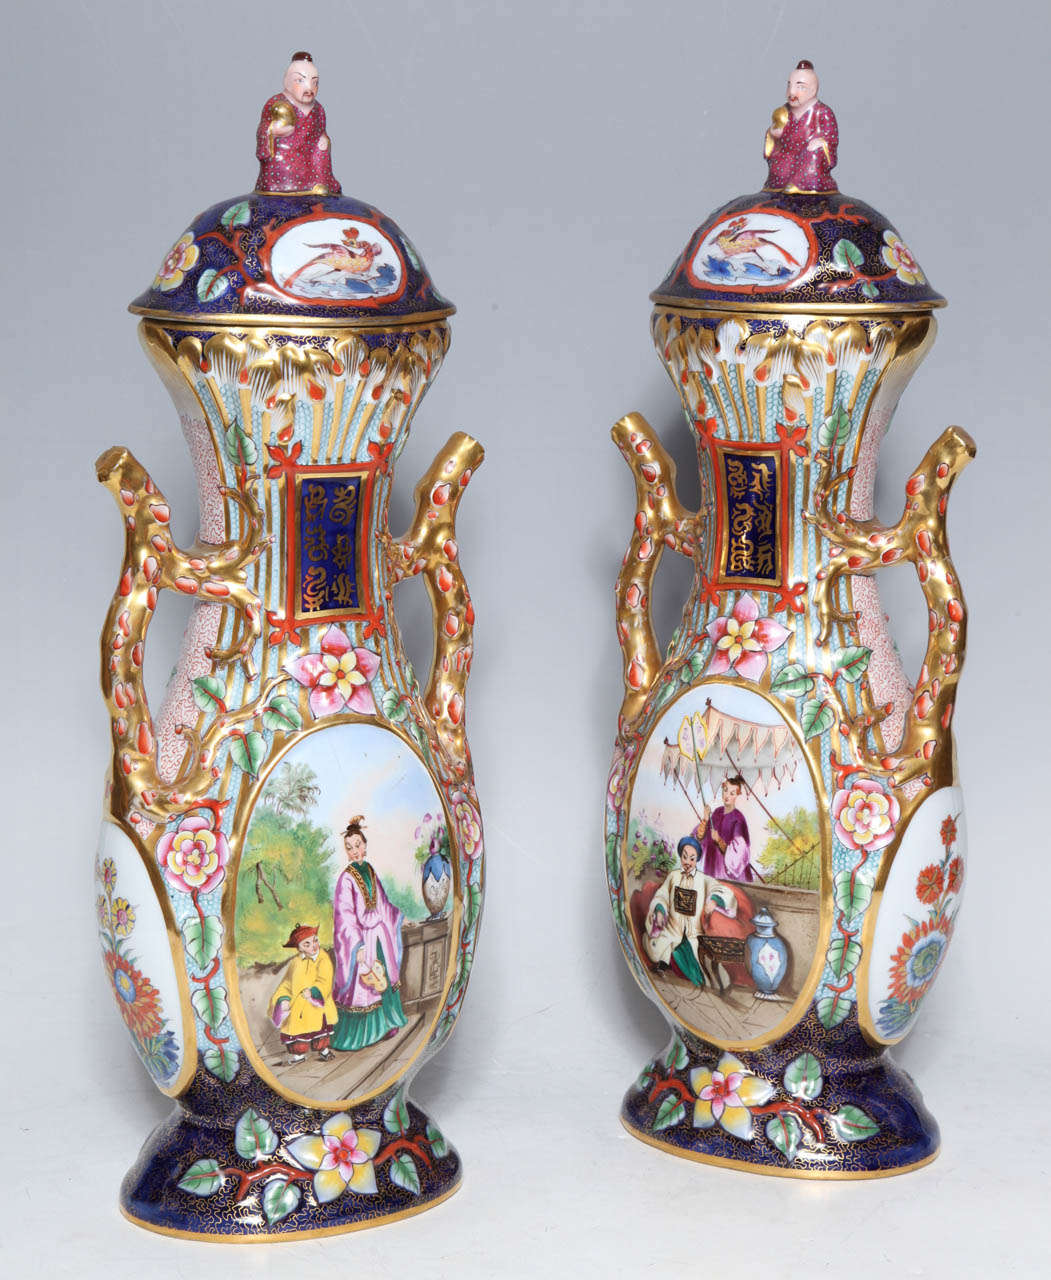 Ein sehr ungewöhnliches und schönes Paar antiker Vasen des Franzosen Jacob Petit. Chinosseri verziert, mit Deckeln und fein gearbeiteten Griffen. Jede Vase zeigt den Kaiser und die Kaiserin im königlichen Garten und eine Figur einer kaiserlichen